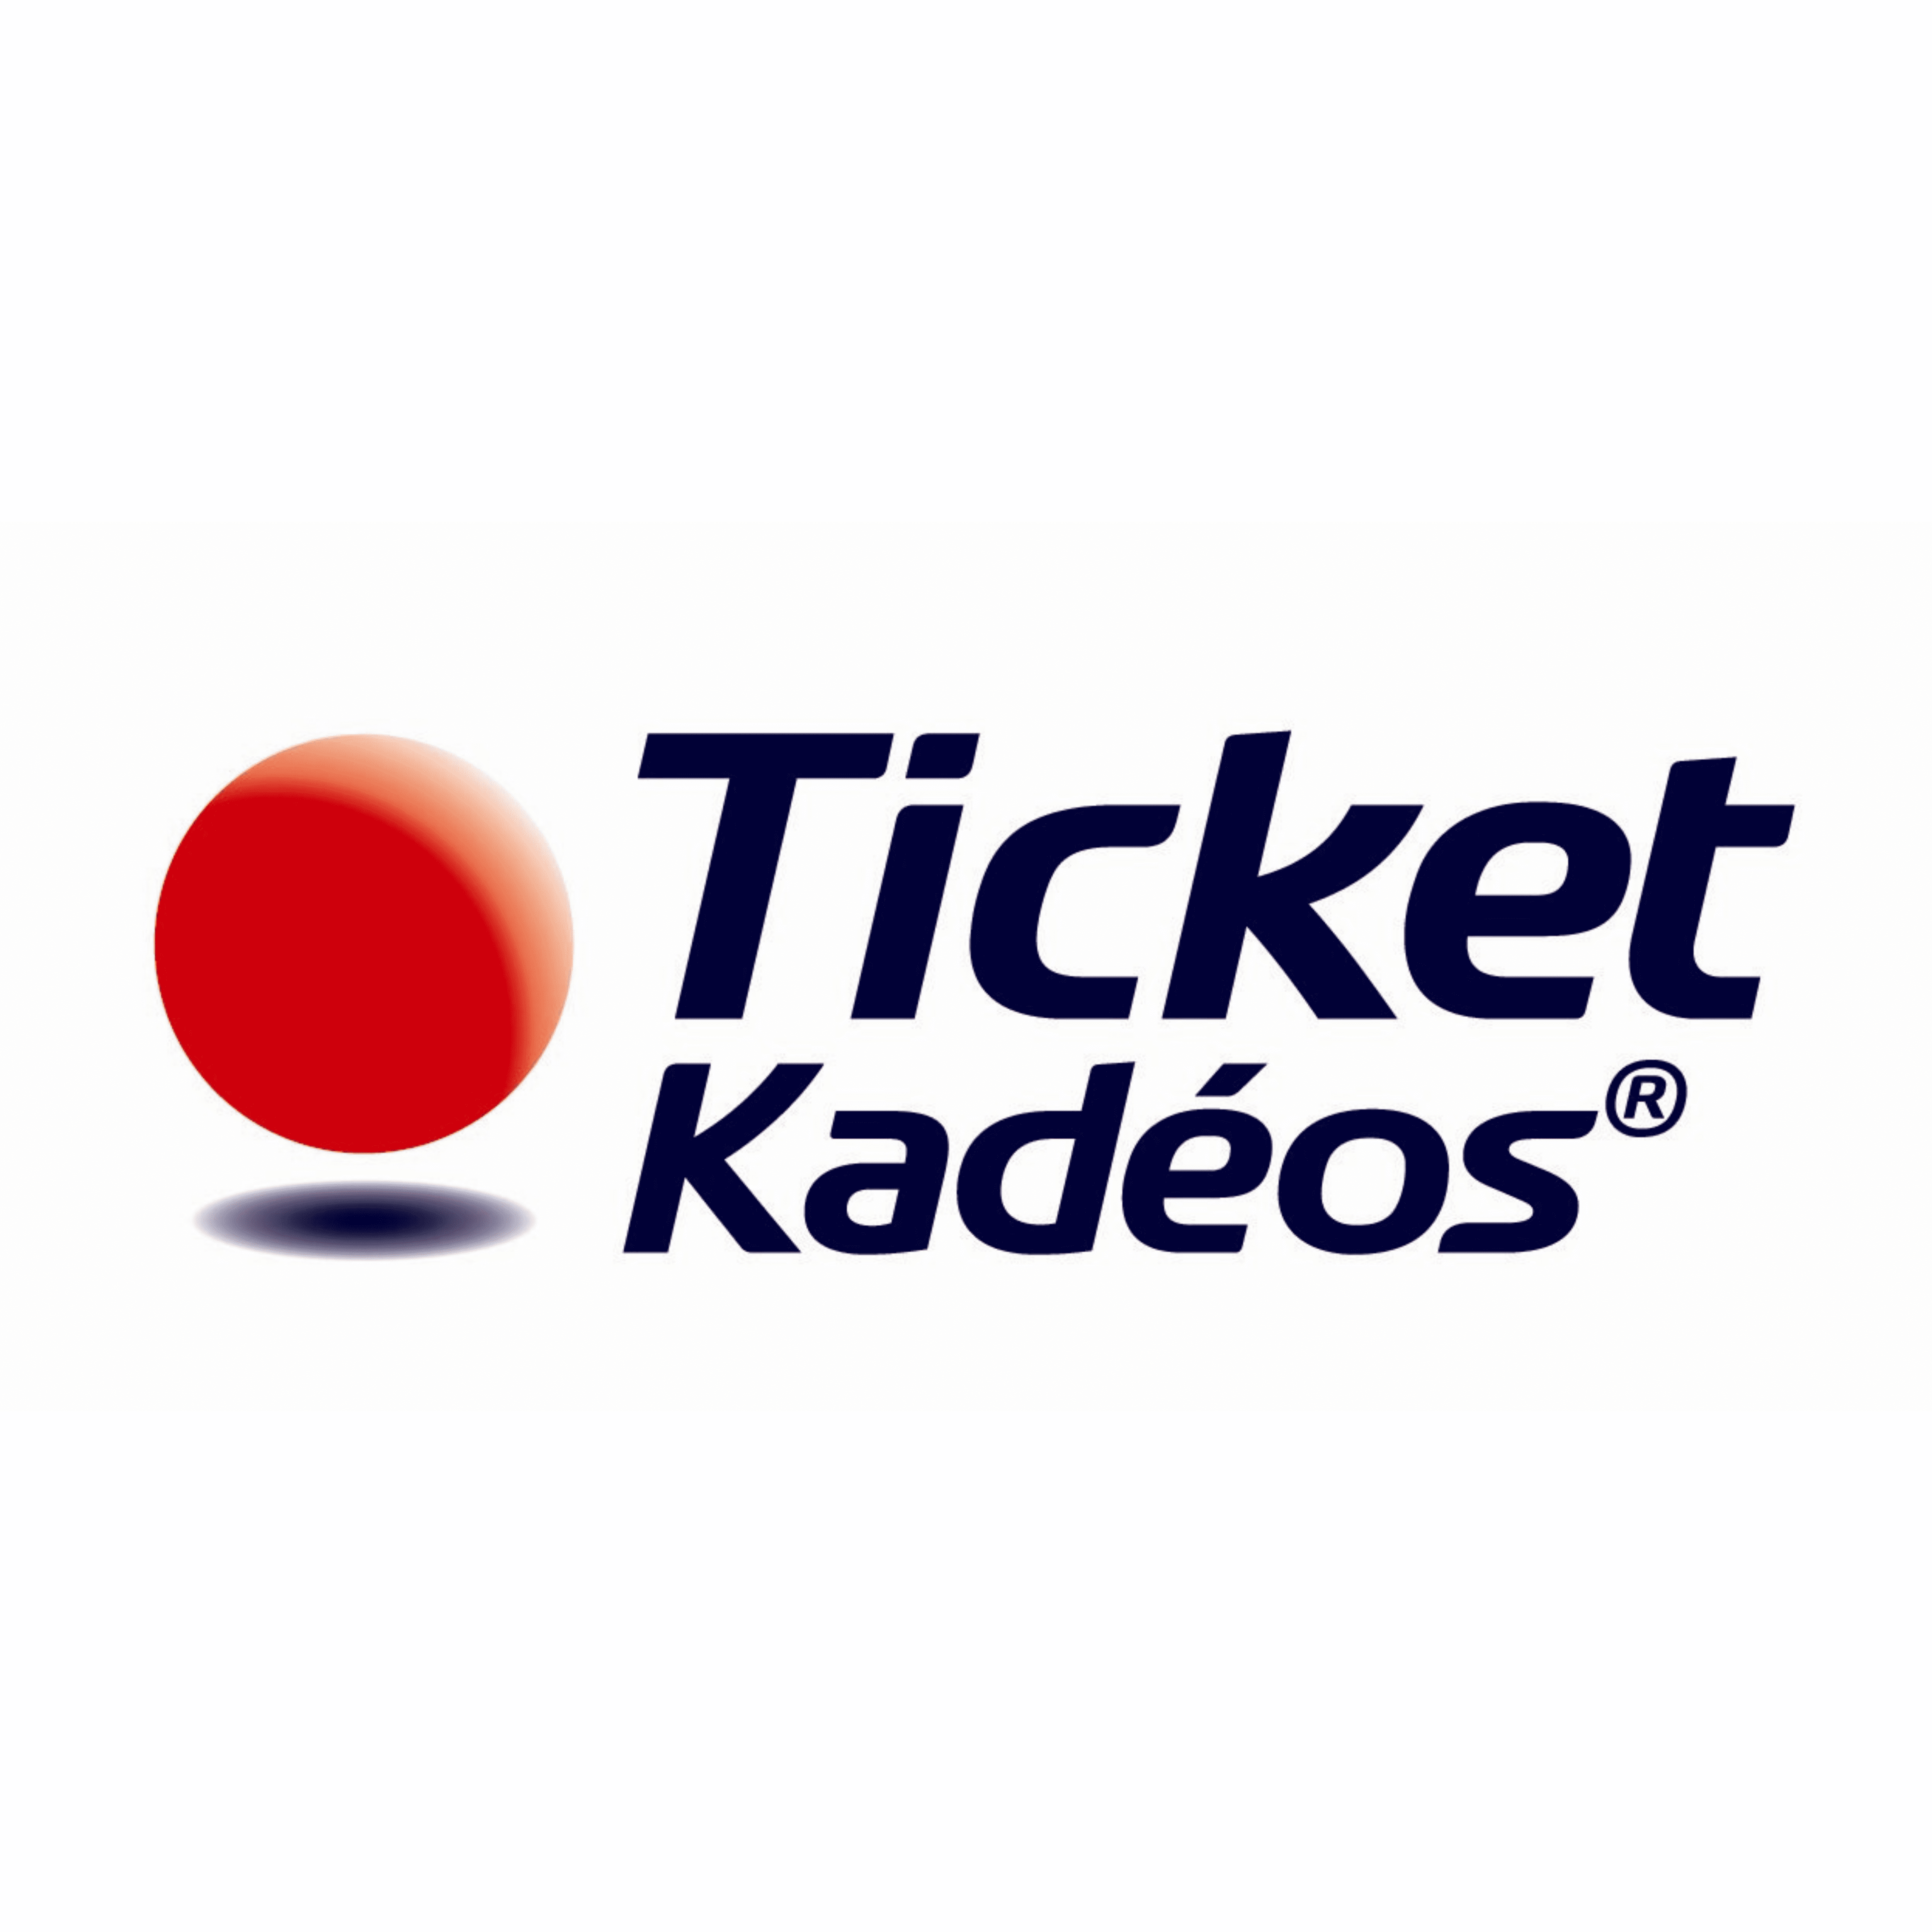 Ticket Kadeos